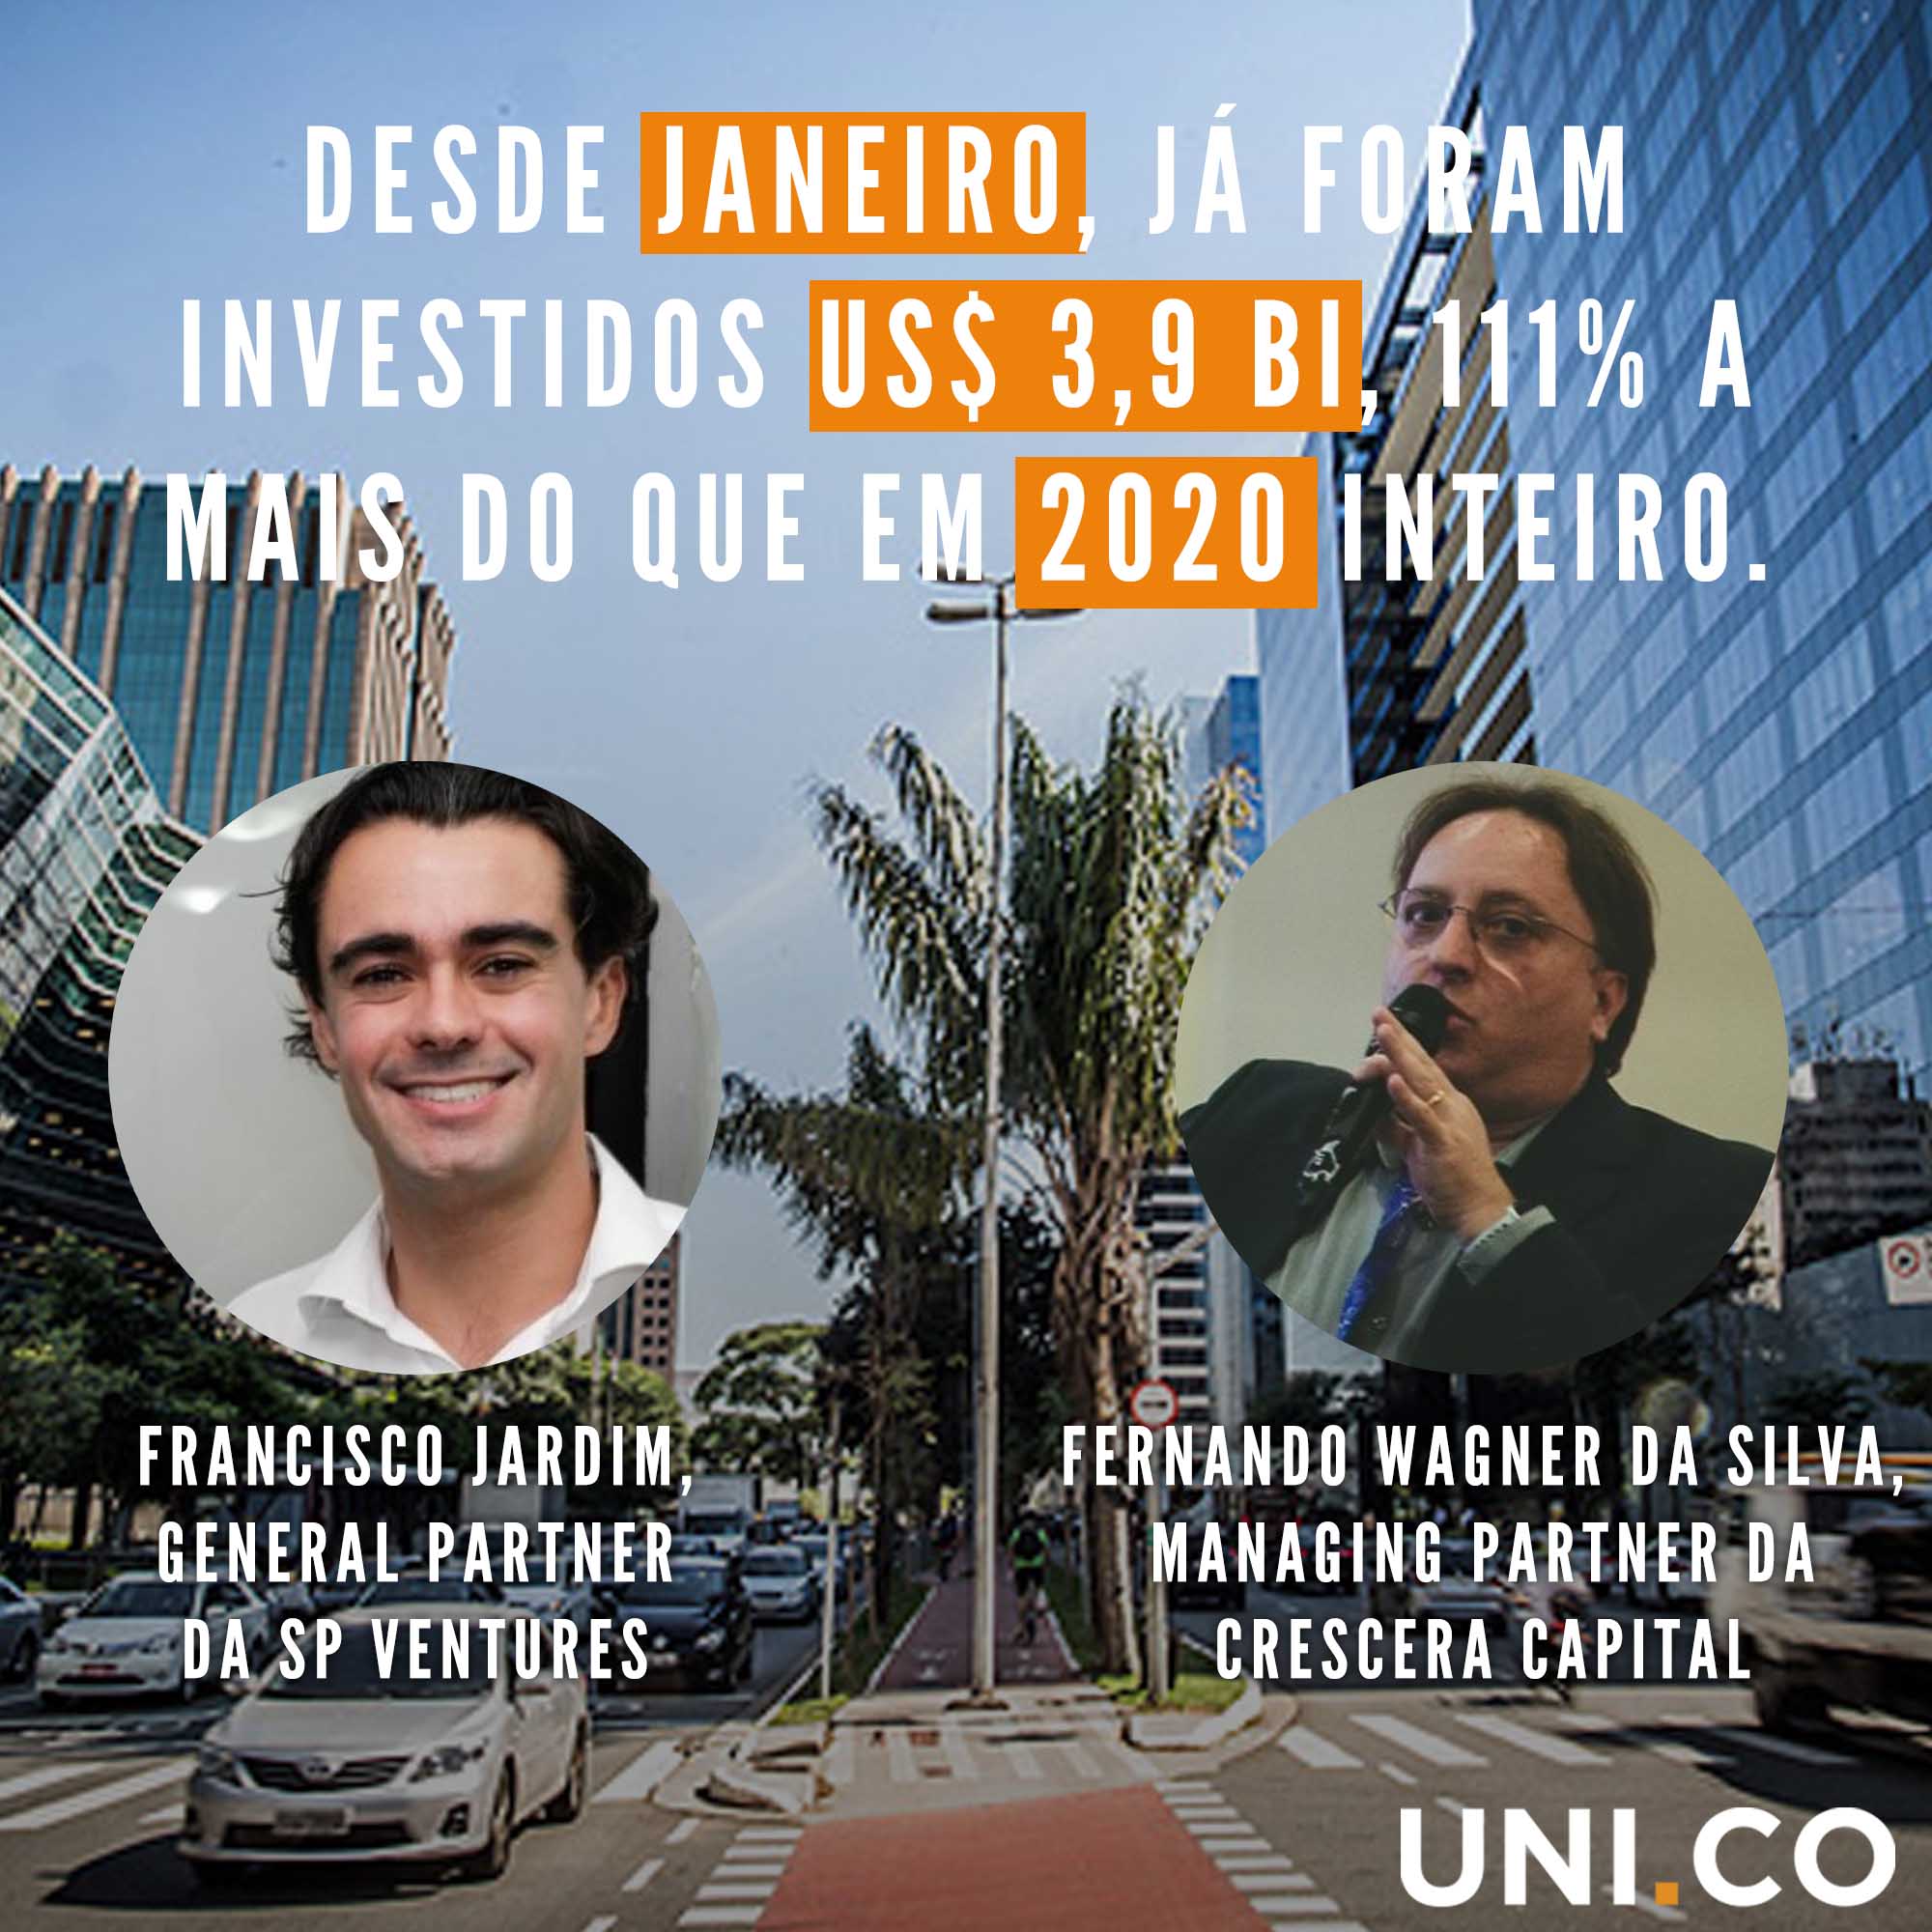 Um momento mágico para o venture capital no Brasil